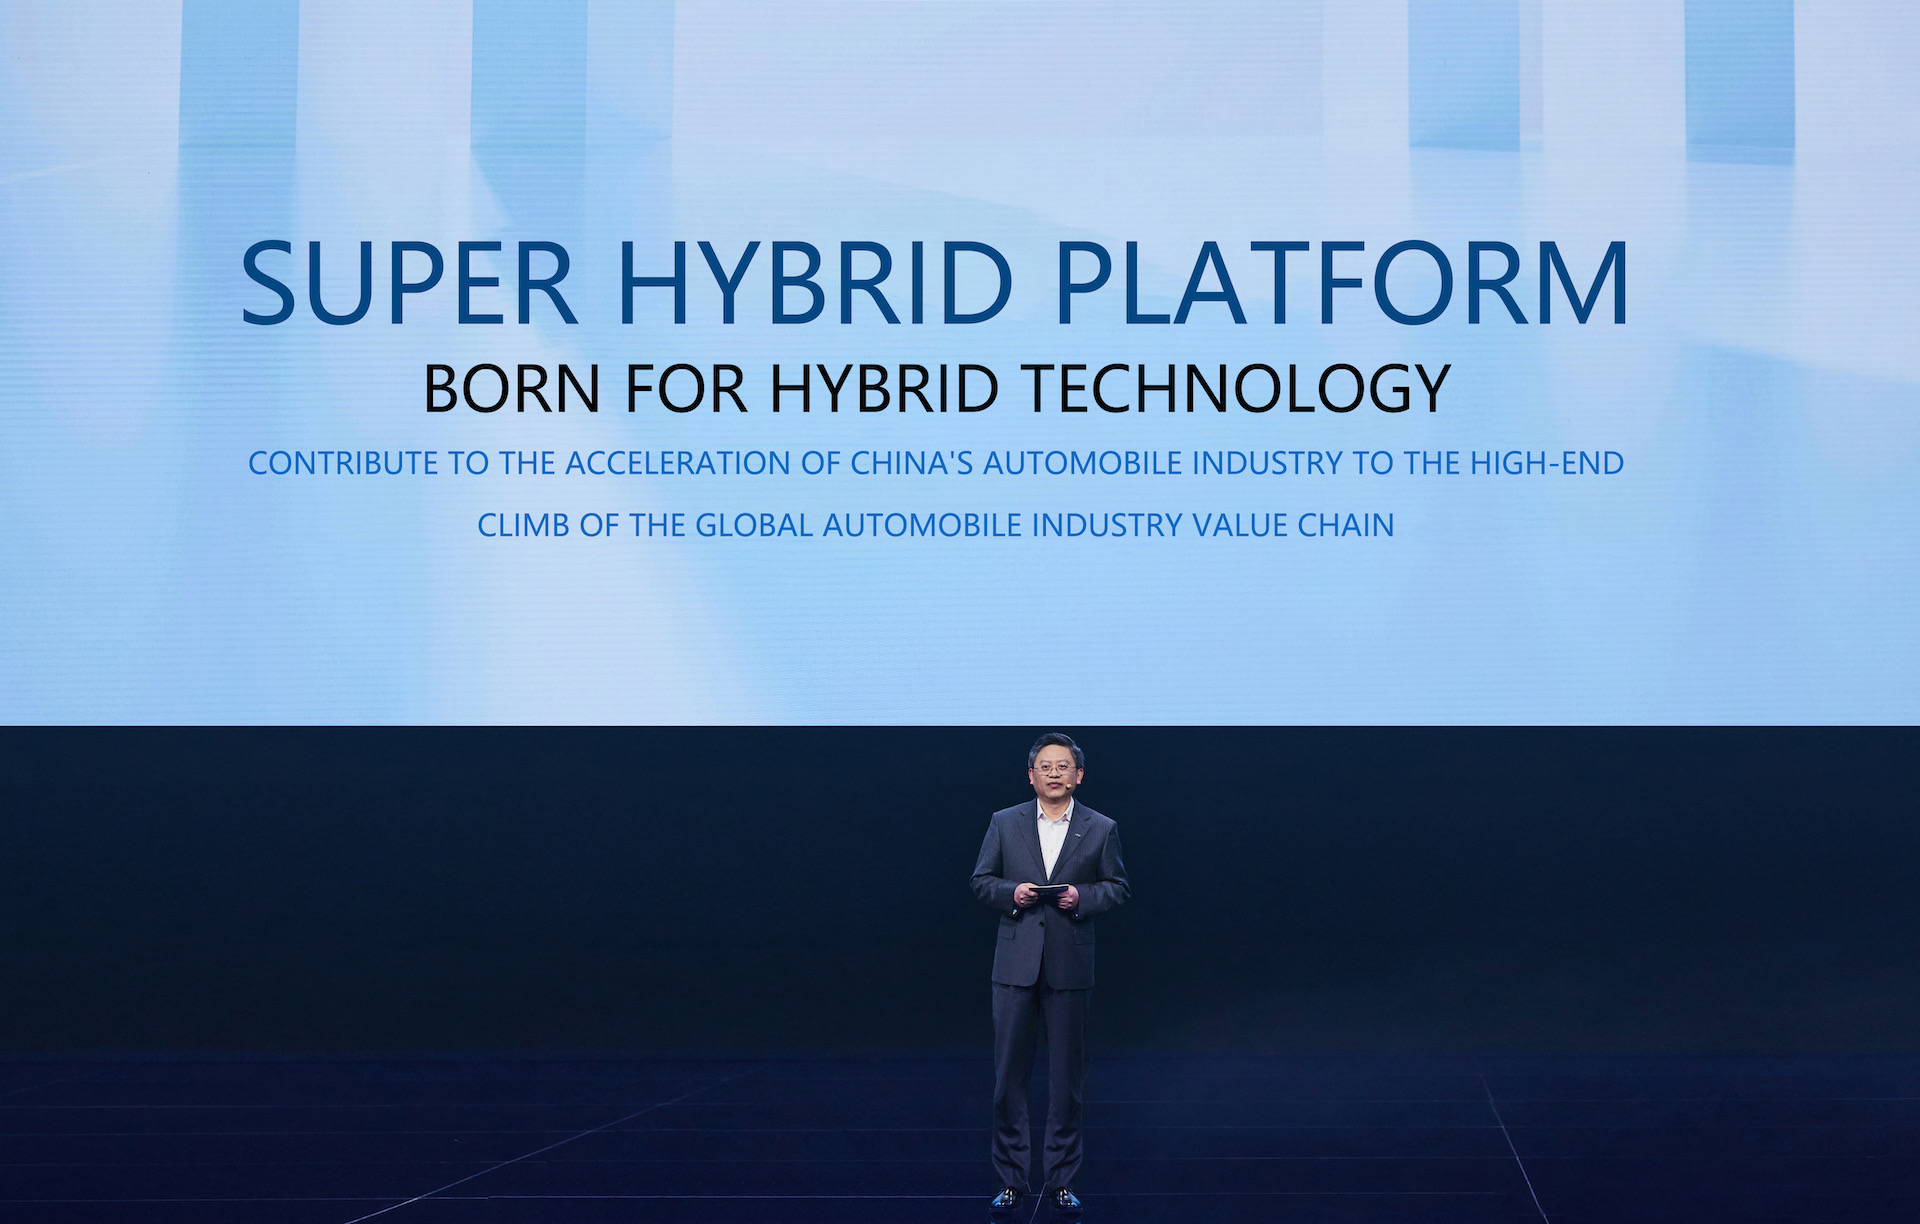 Chery details upcoming Super Hybrid Platform, arriving 2025